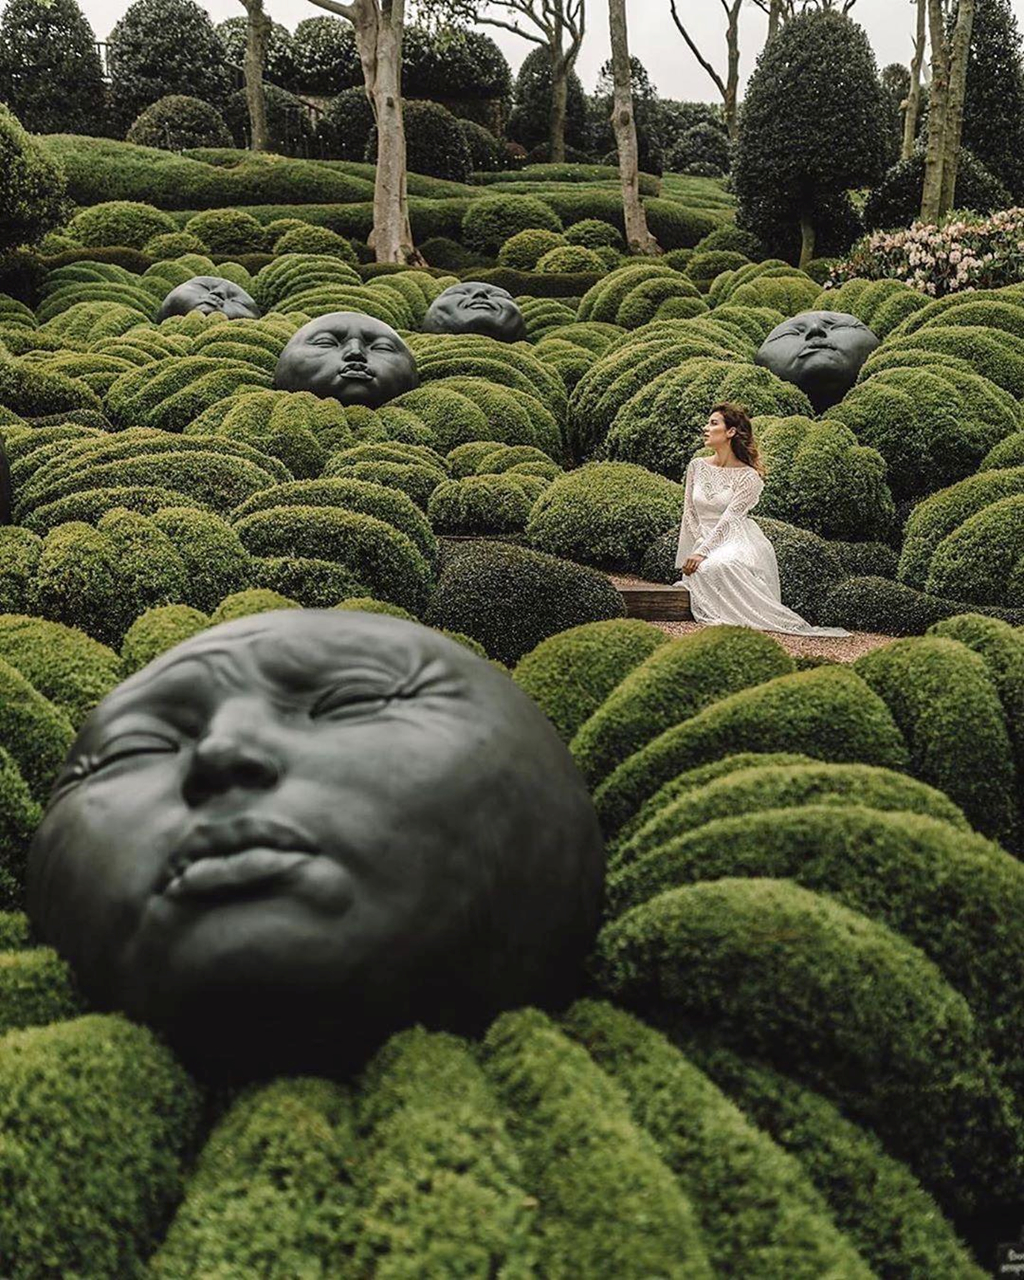 Khu vườn kỳ dị ở Pháp chứa các viên đá mặt người khổng lồ